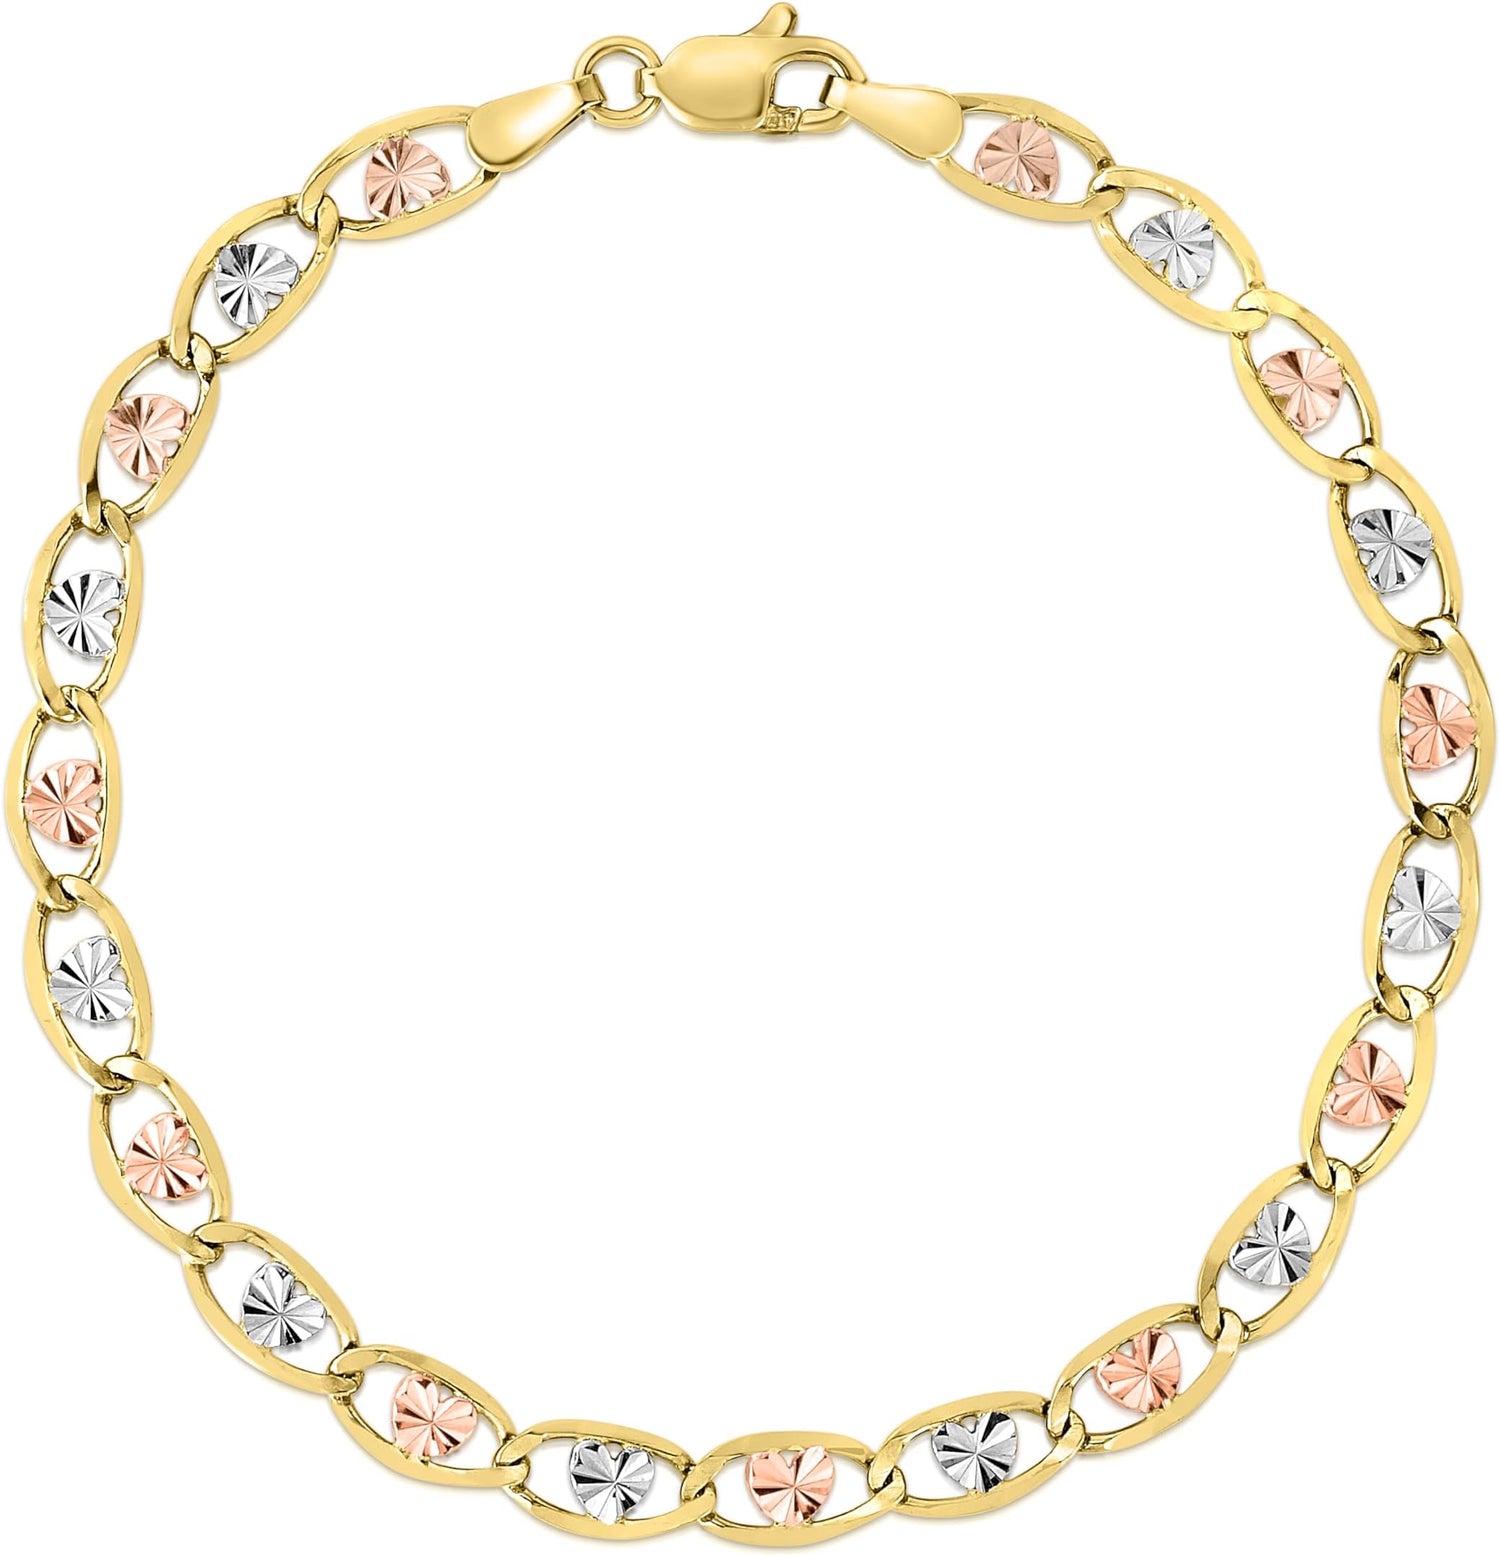 10k Tri-Color Gold 3.5mm Valentino Heart Link Chain Bracelet or Anklet